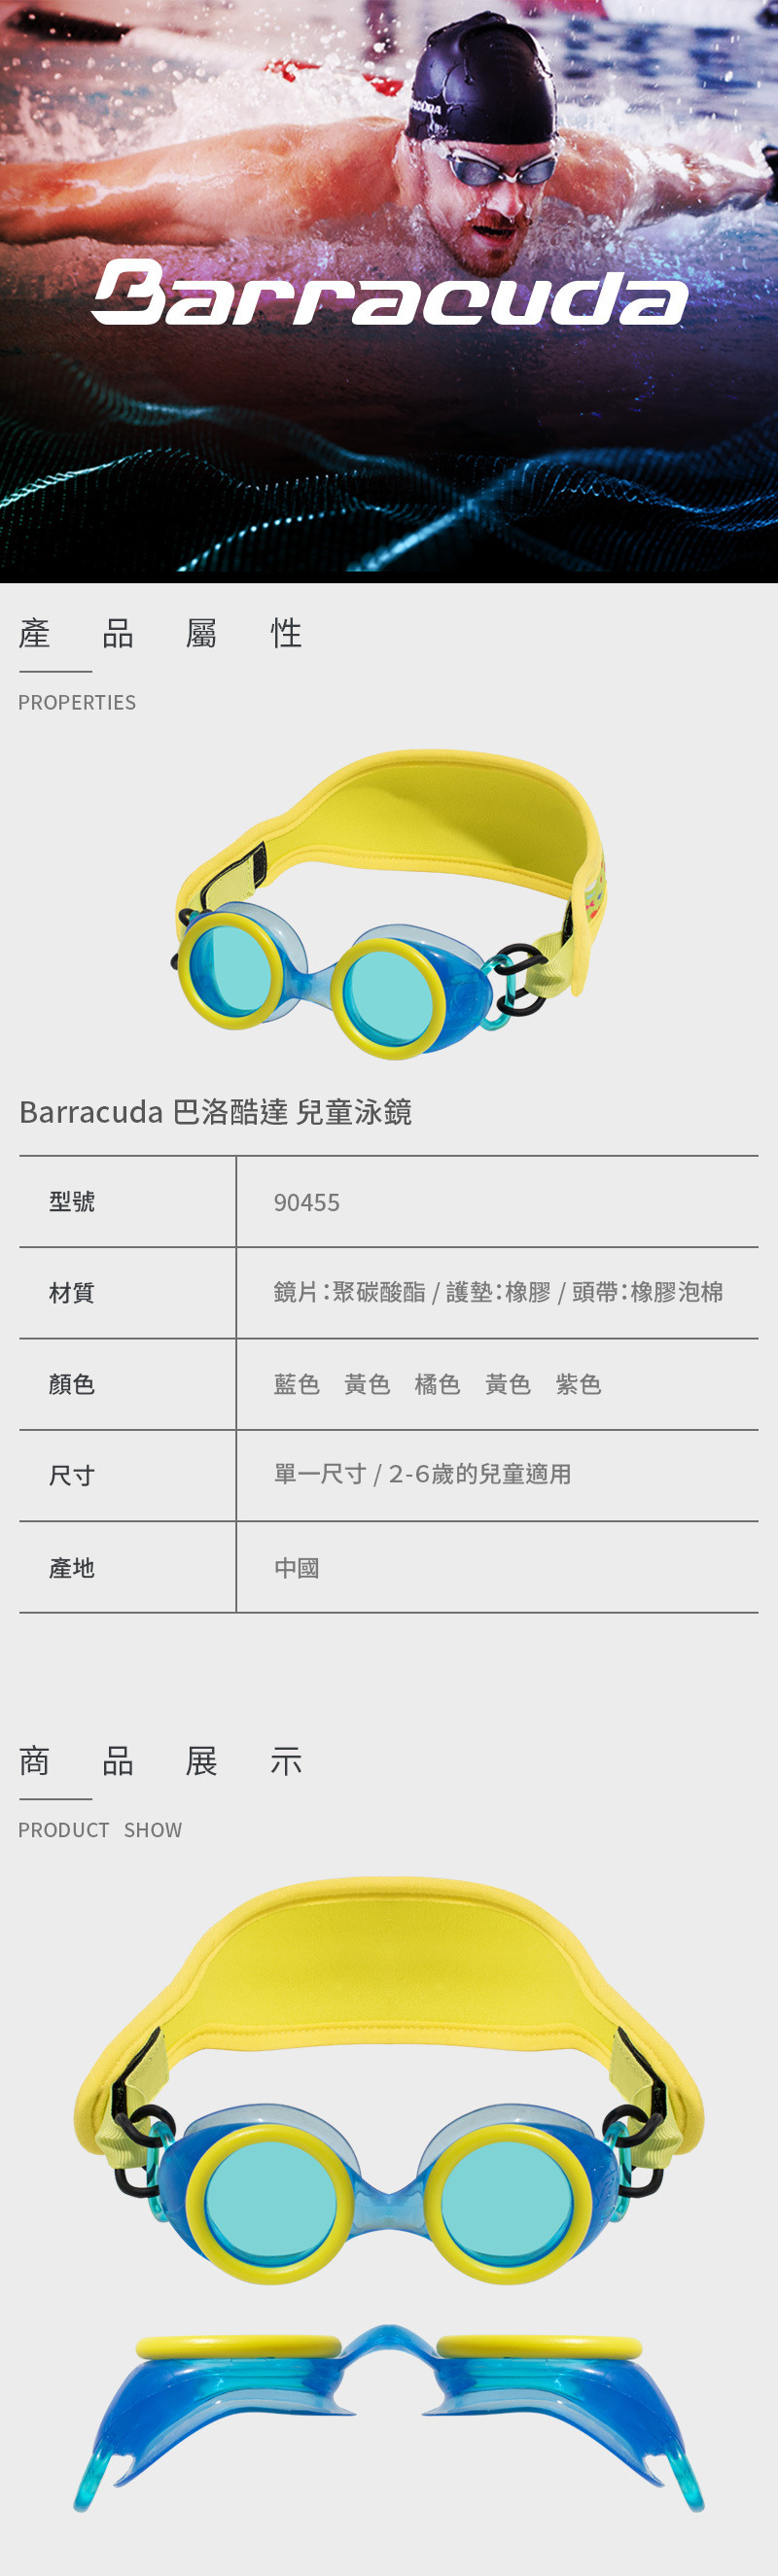 【Barracuda 巴洛酷達】兒童泳鏡 90455